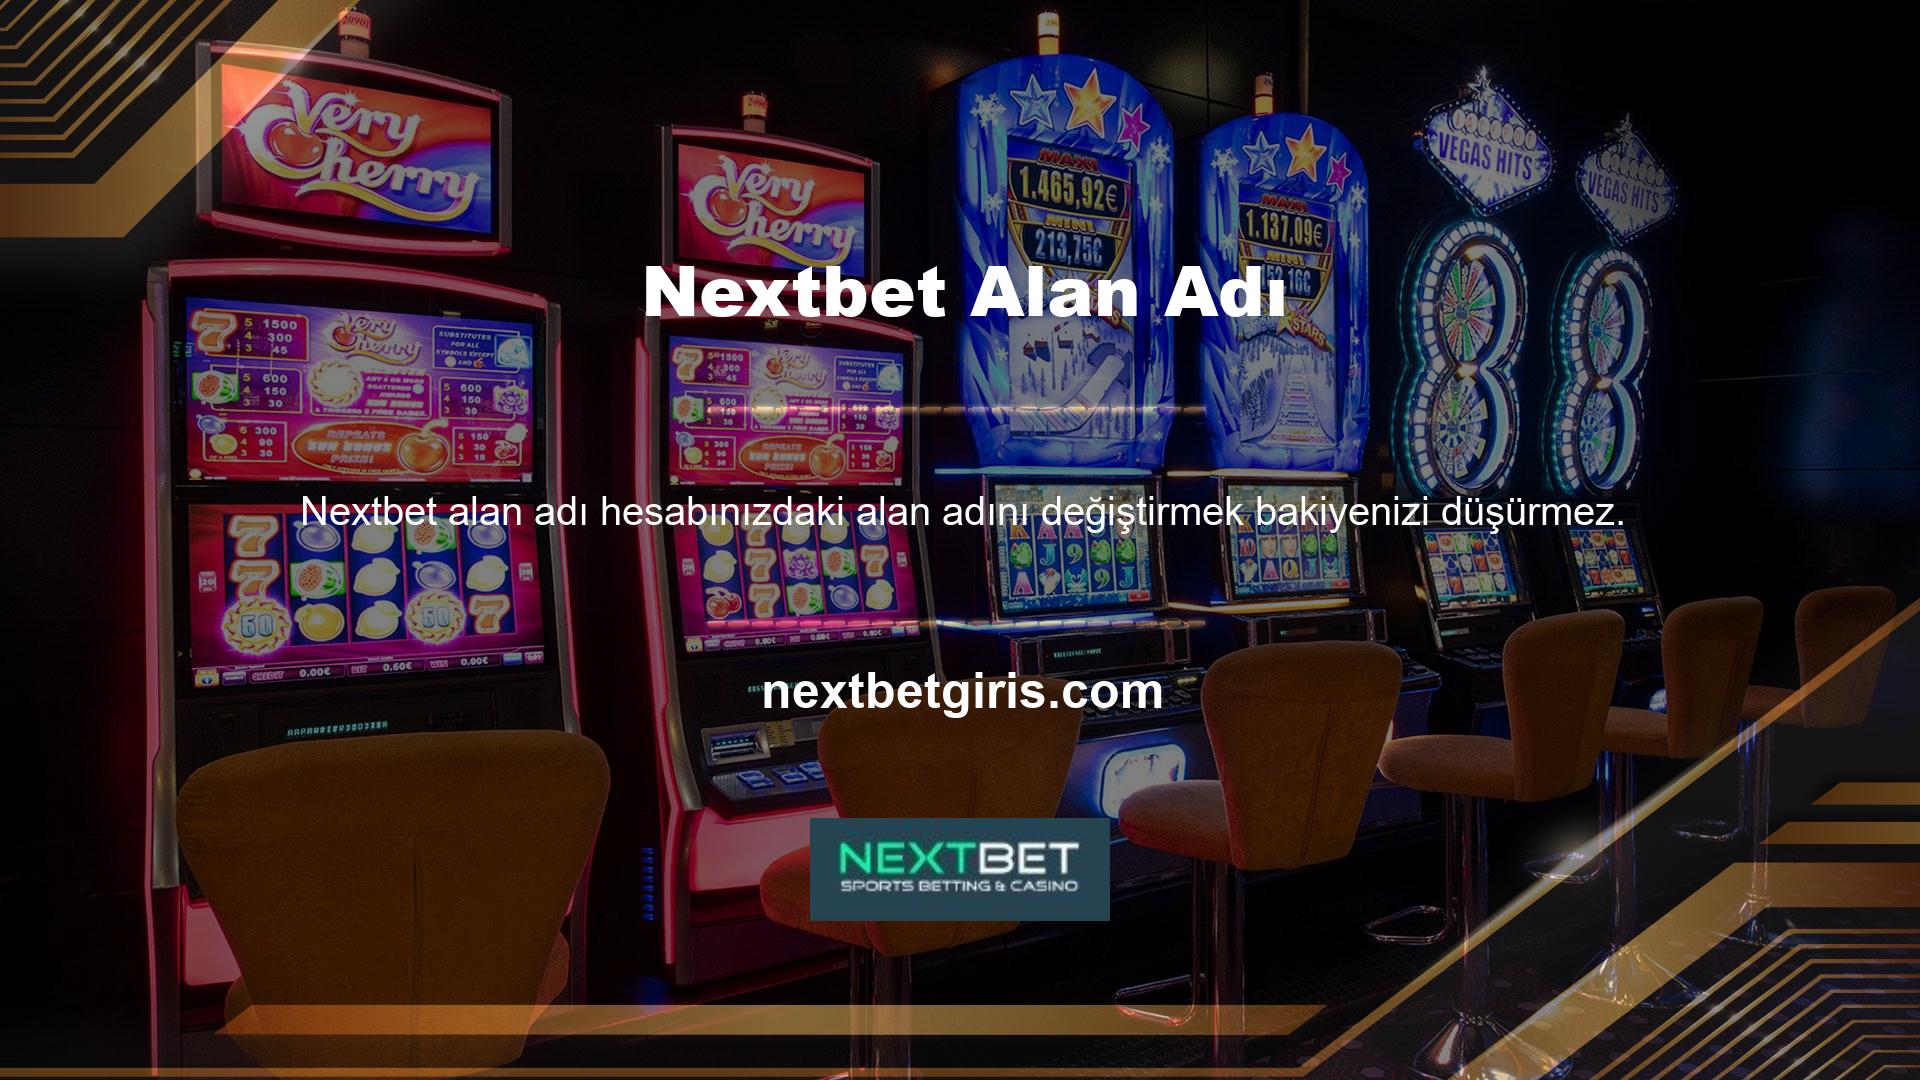 En istisnai hizmet sağlayıcı platformu Nextbet